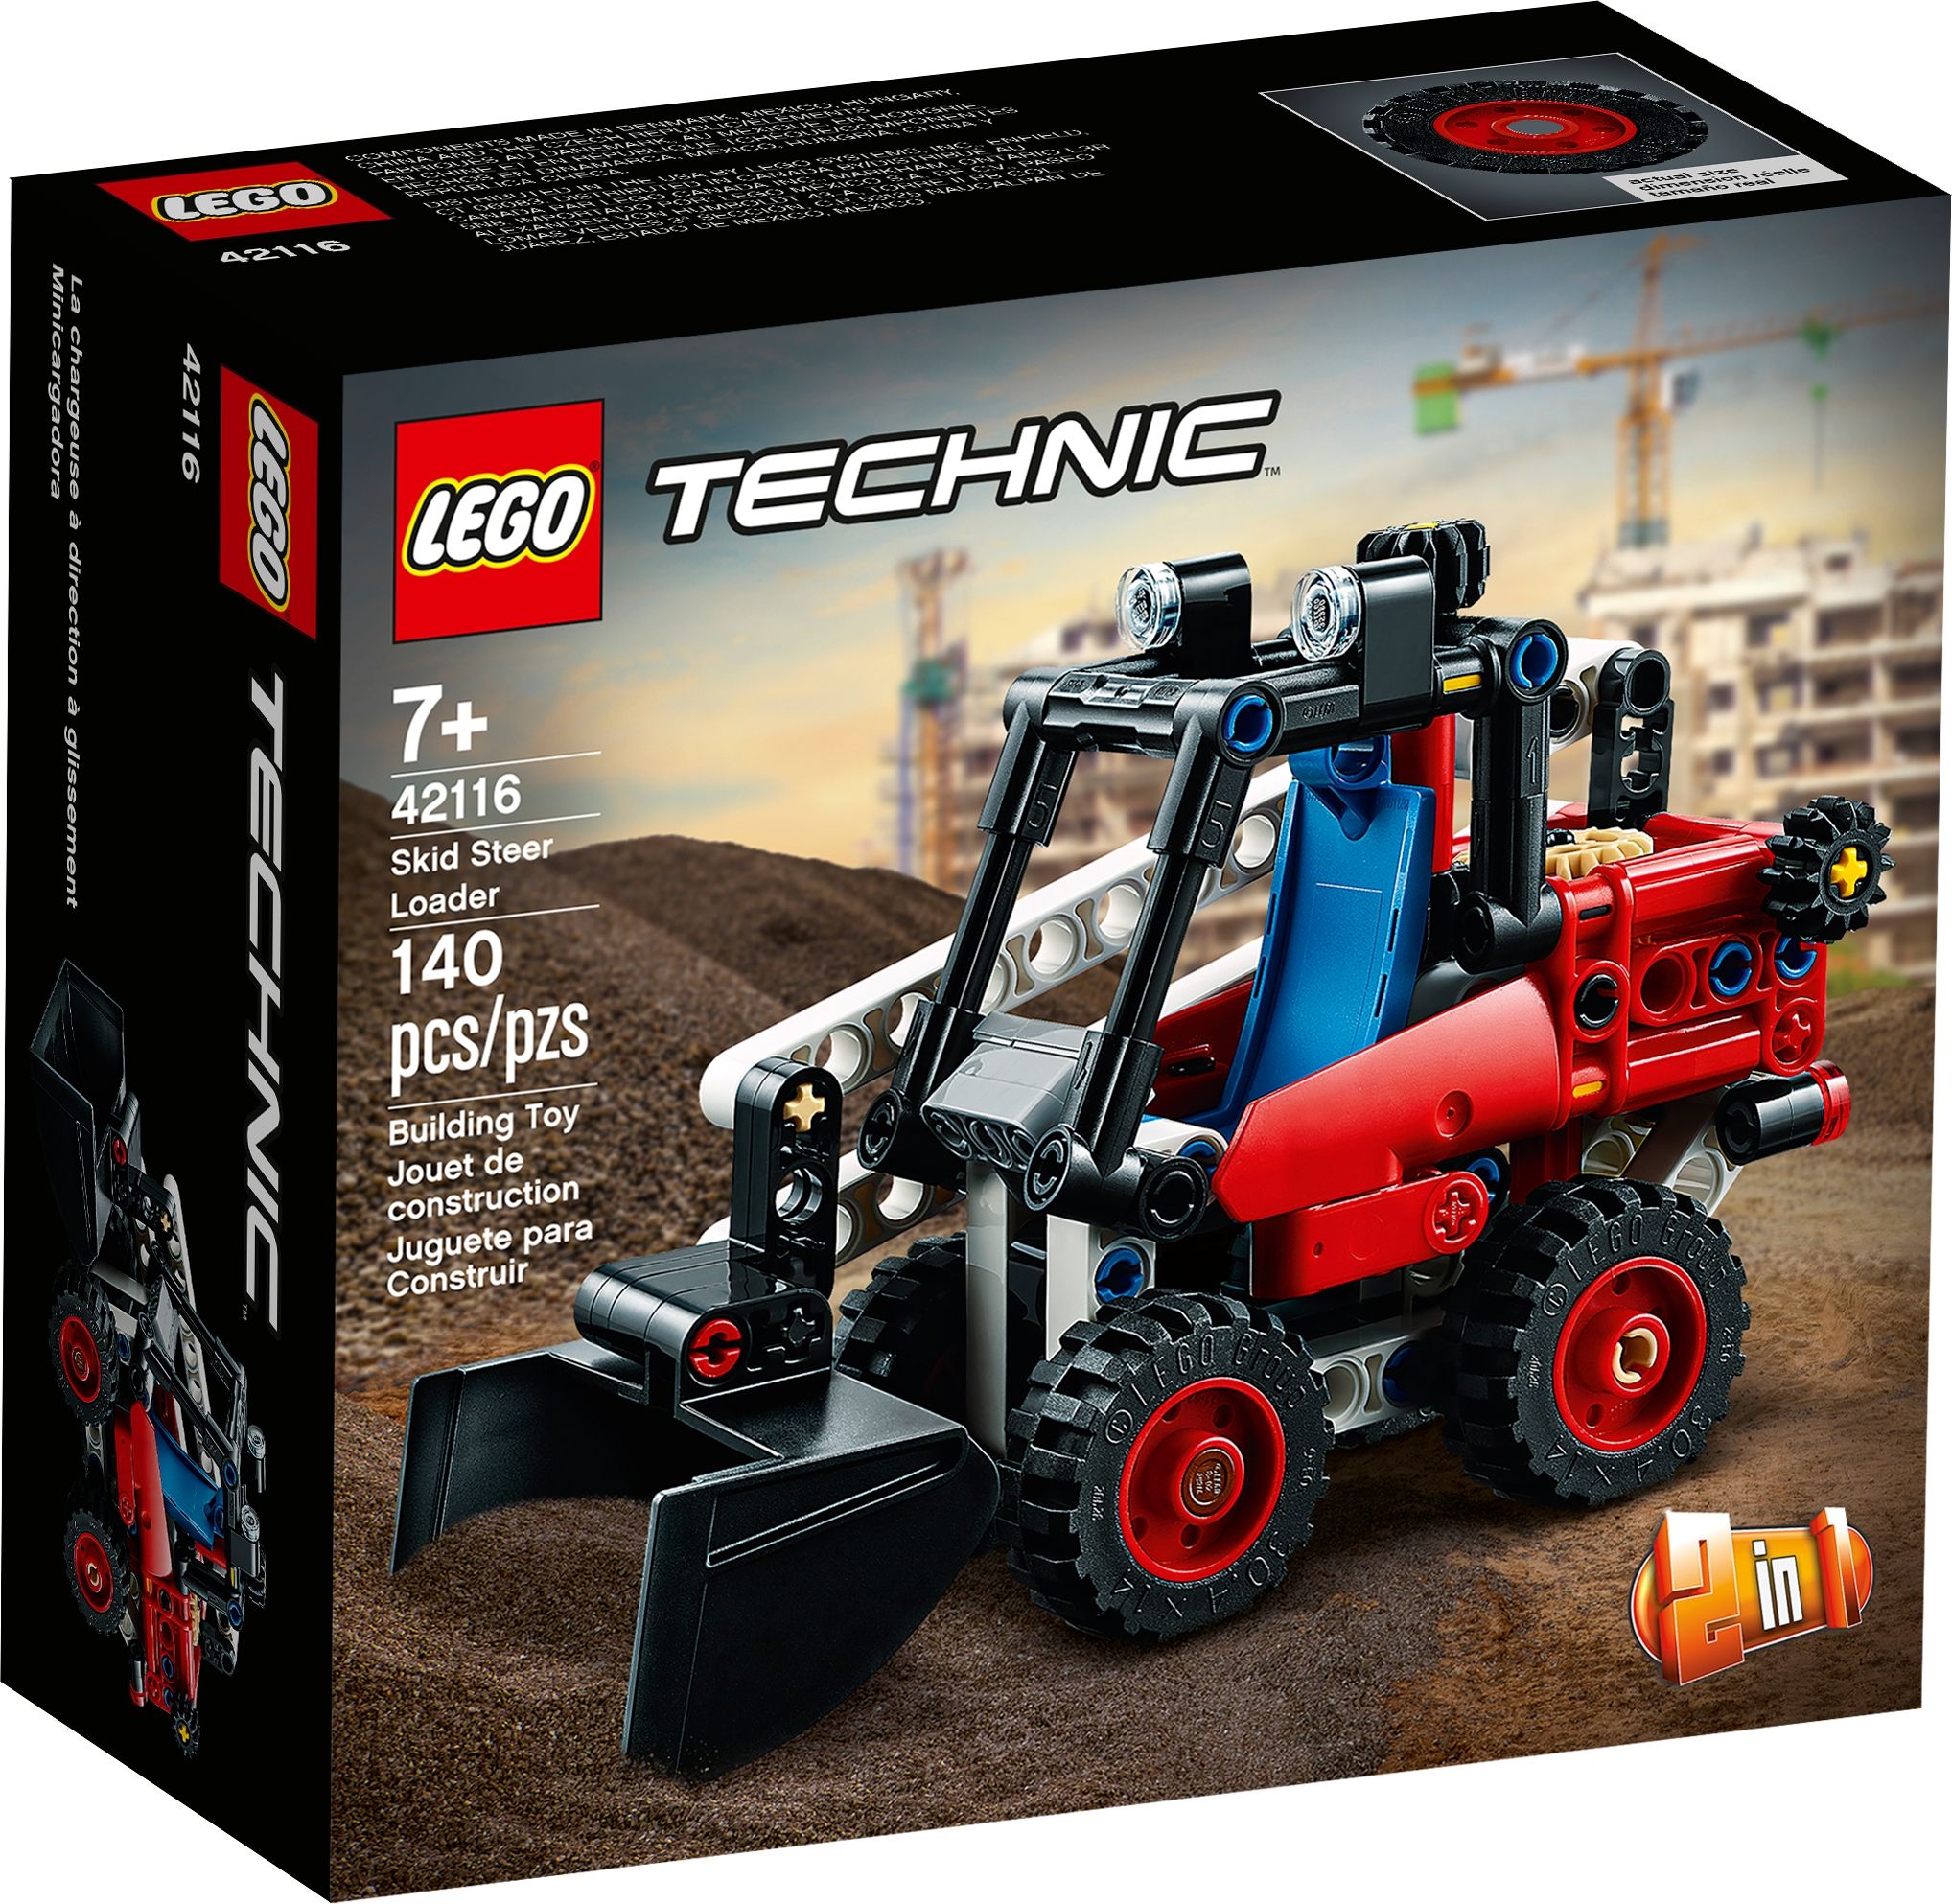 LEGO Technic 42116 Kompaktlader LEGO_42116_box1_v39.jpg